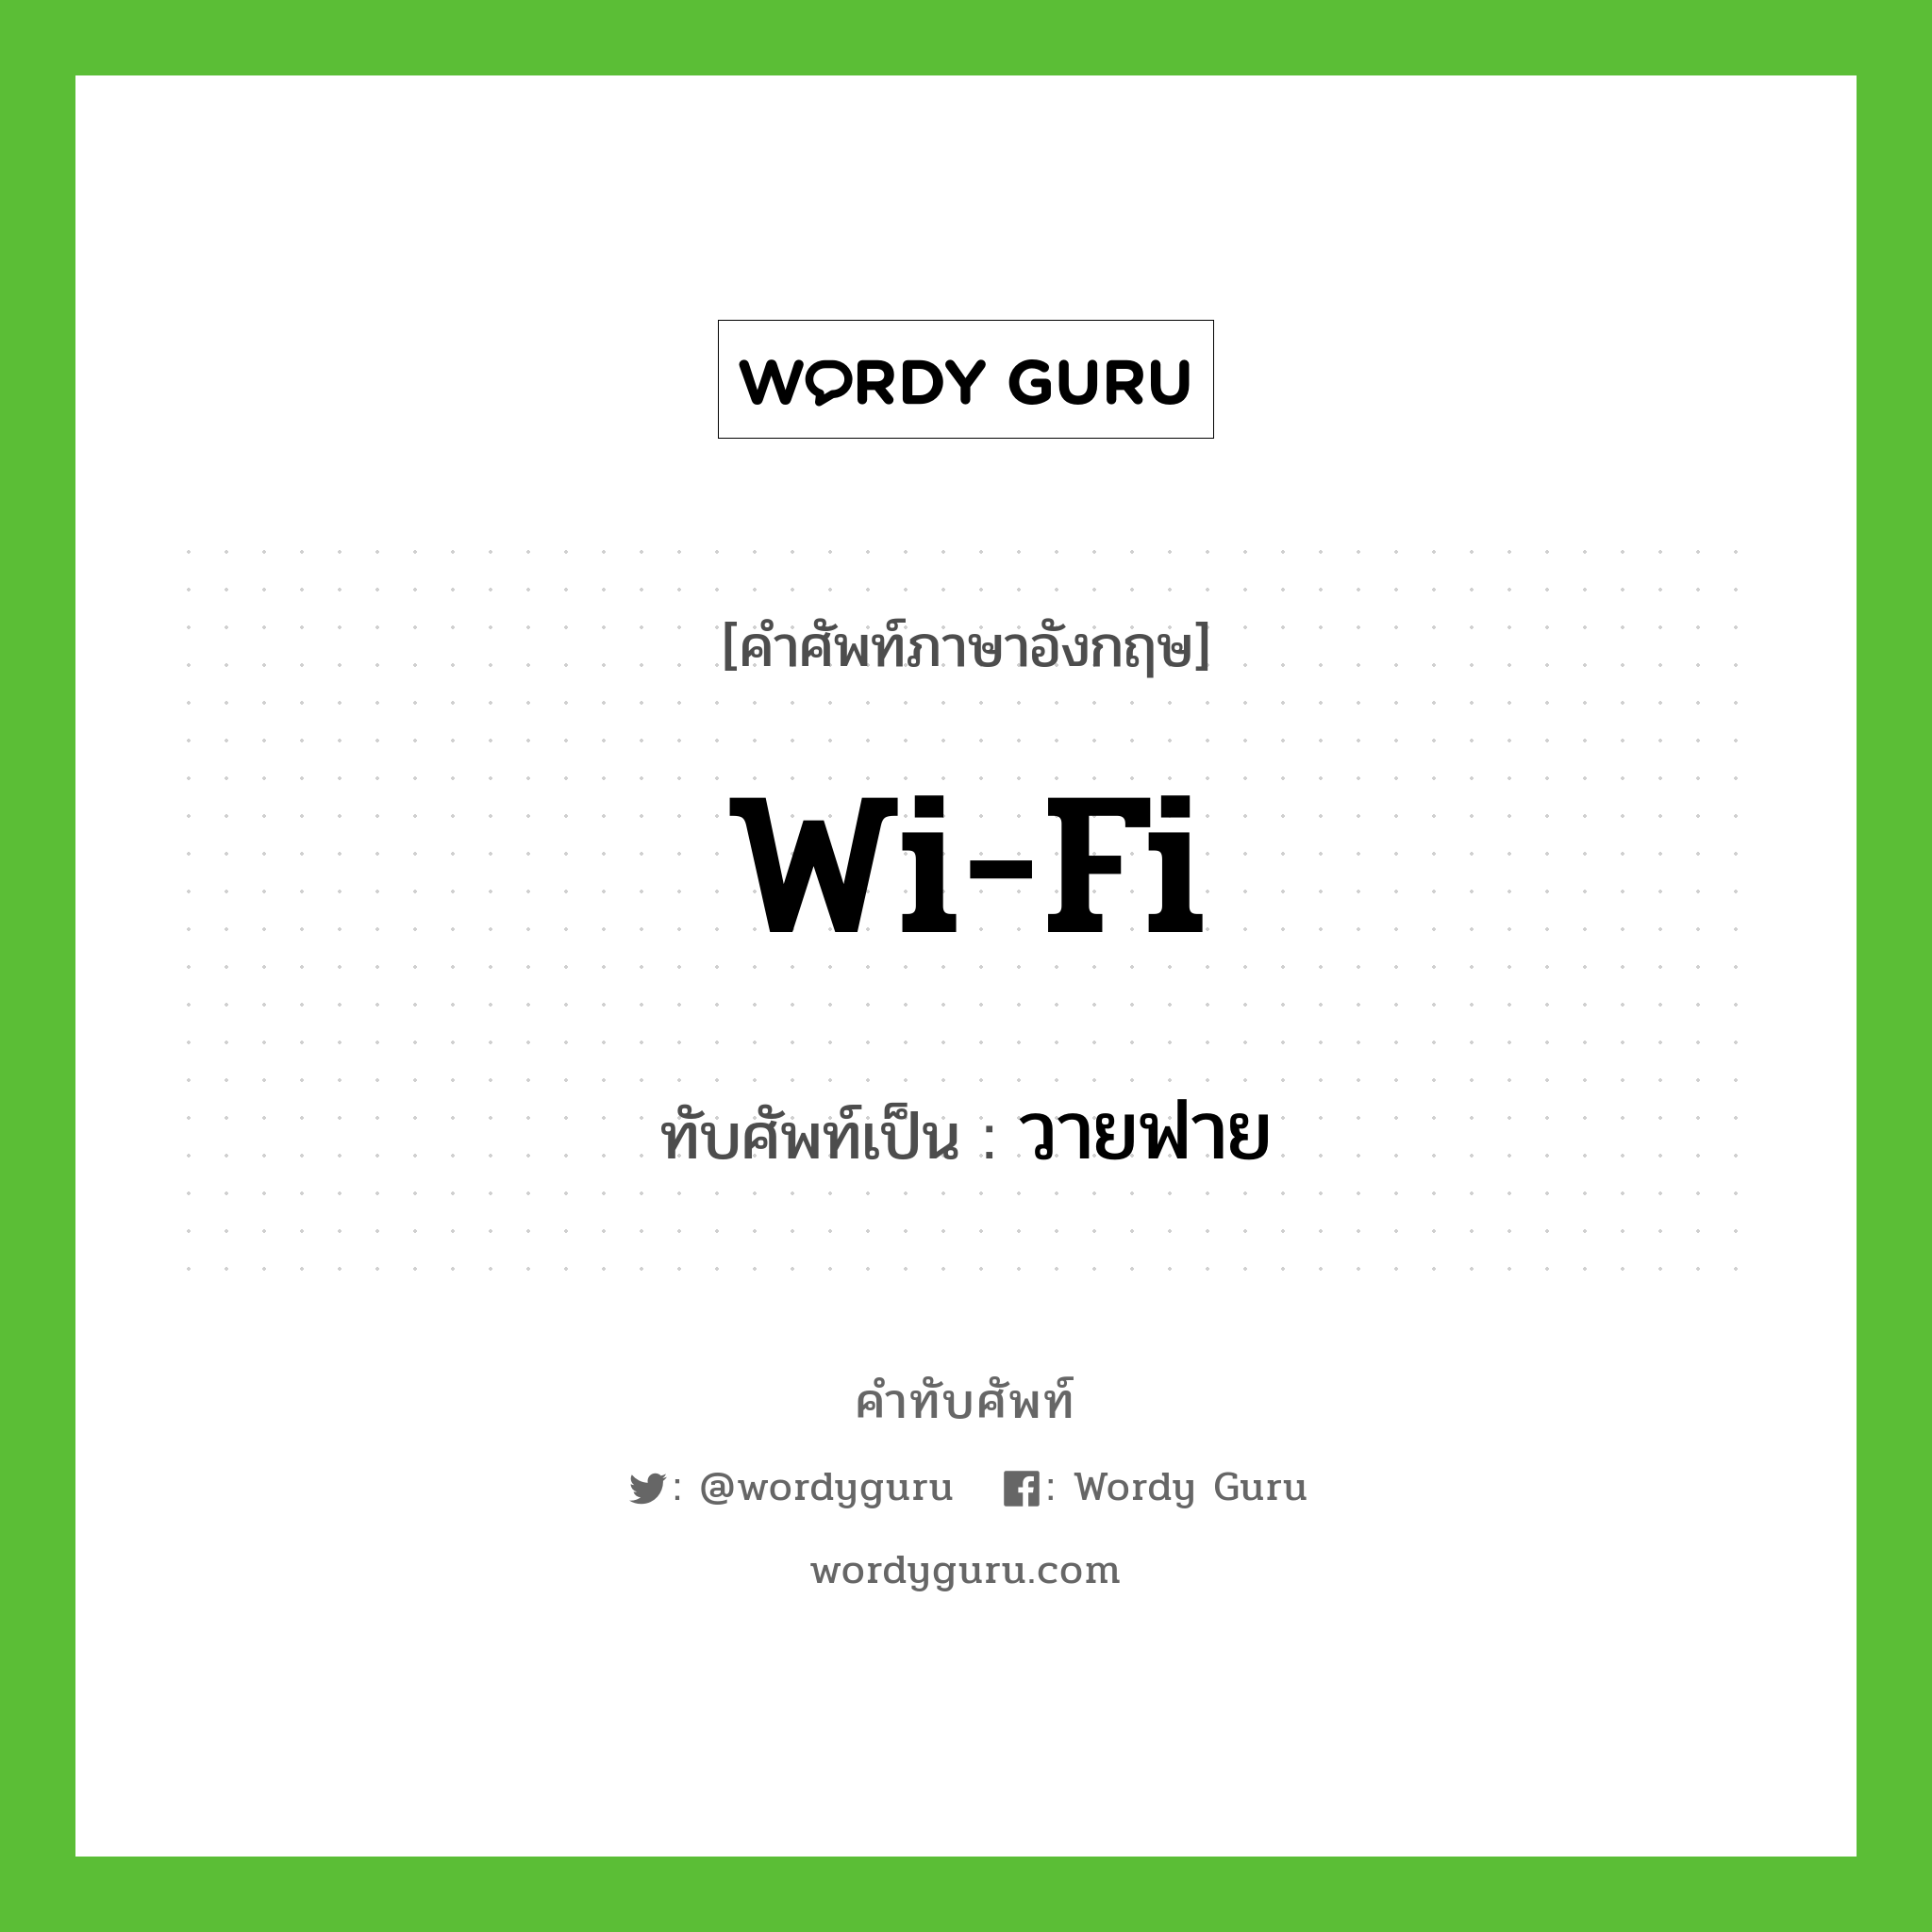 Wi-Fi เขียนเป็นคำไทยว่าอะไร?, คำศัพท์ภาษาอังกฤษ Wi-Fi ทับศัพท์เป็น วายฟาย